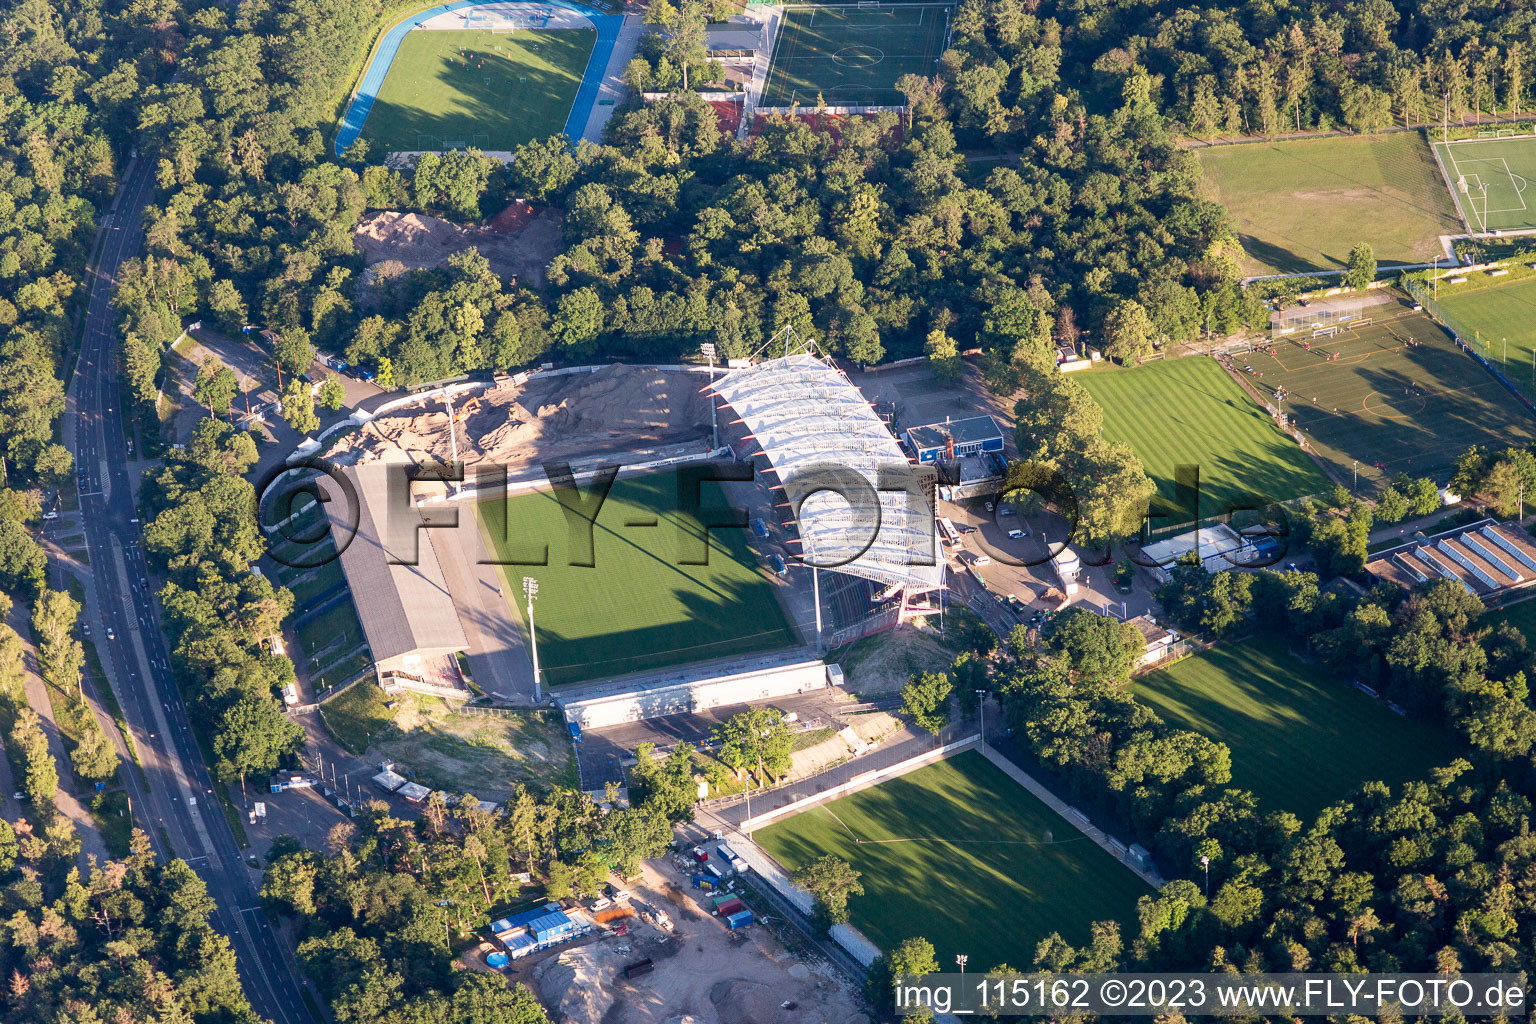 Luftbild von Wildparkstadion des KSC, Baustelle im Ortsteil Innenstadt-Ost in Karlsruhe im Bundesland Baden-Württemberg, Deutschland